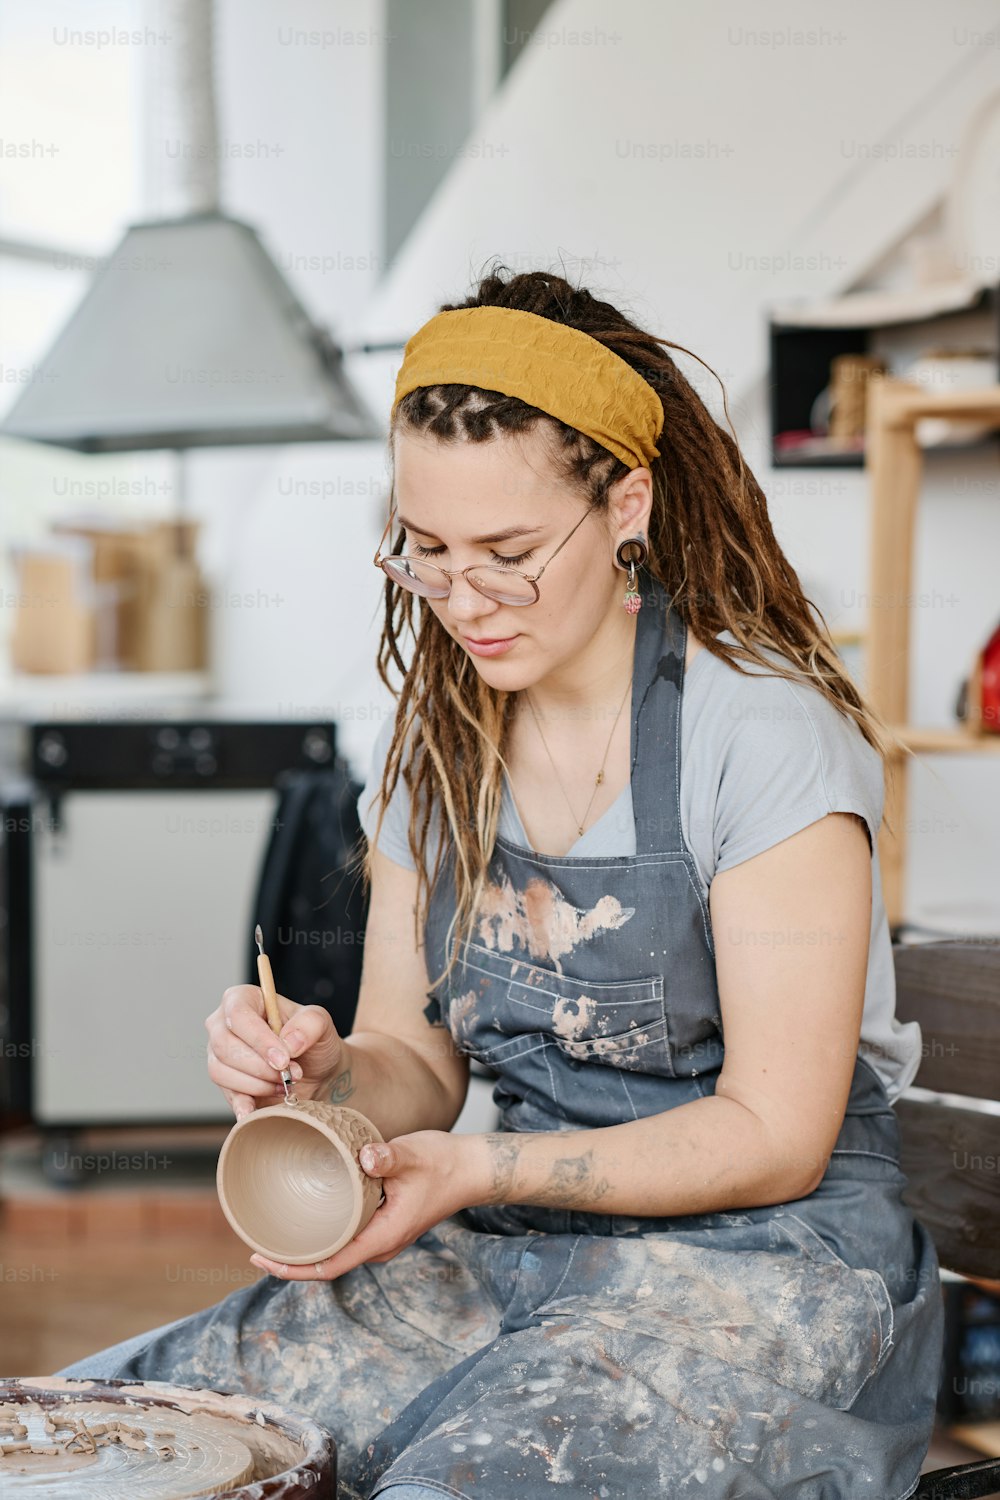 Vasaio femminile creativo in abiti da lavoro che intaglia motivi decorativi su una tazza di argilla fatta a mano mentre è seduta davanti alla ruota di ceramica